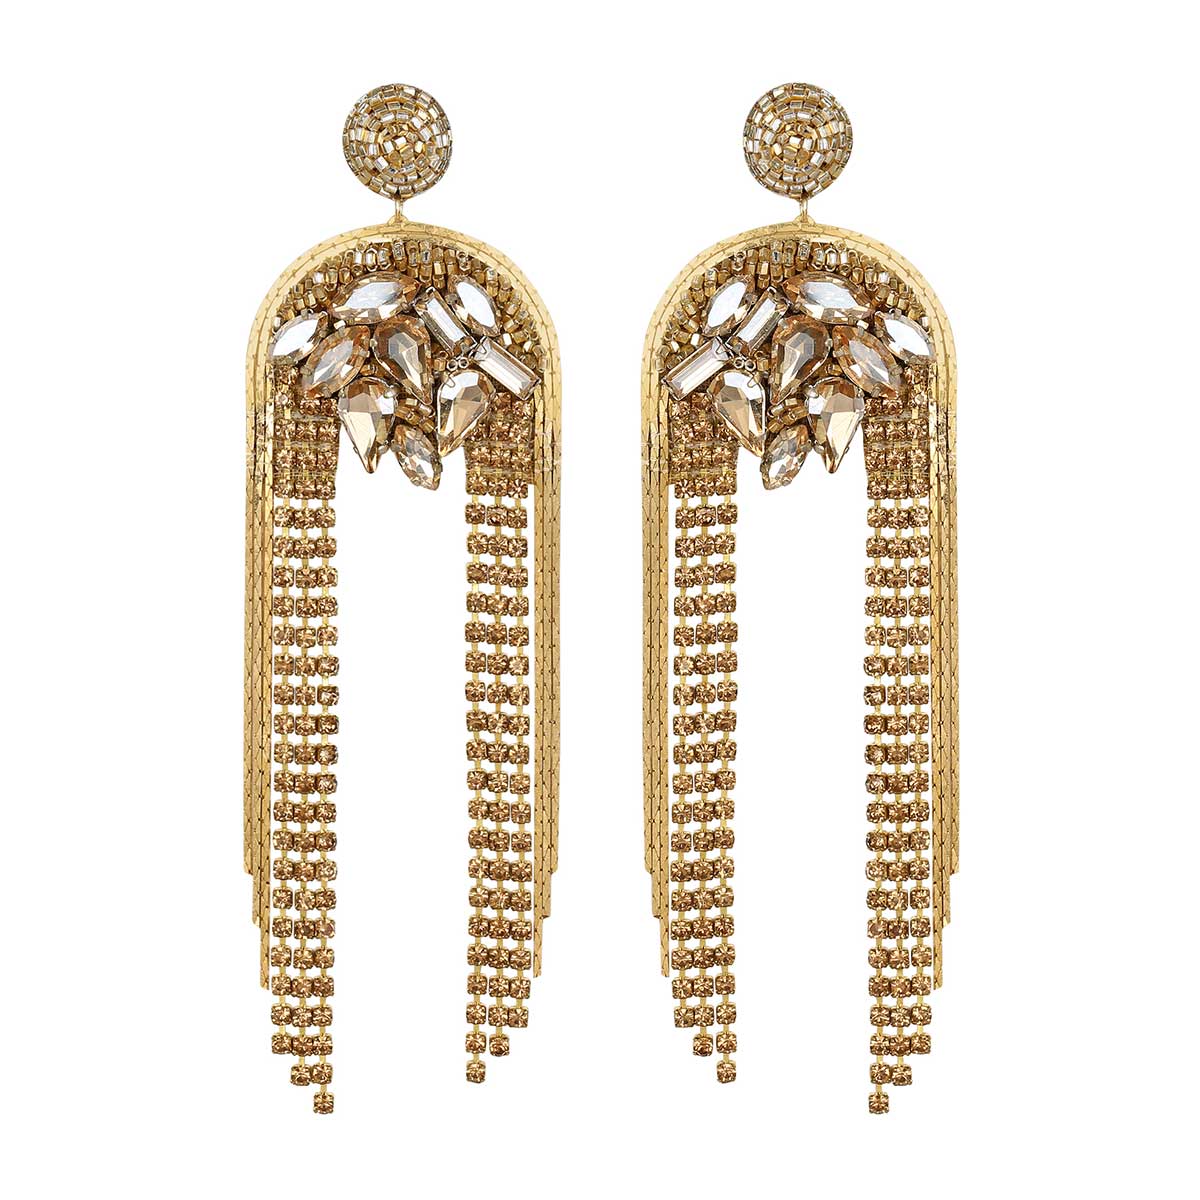 Deepa Gurnani Handmade Kylee Earrings in Gold